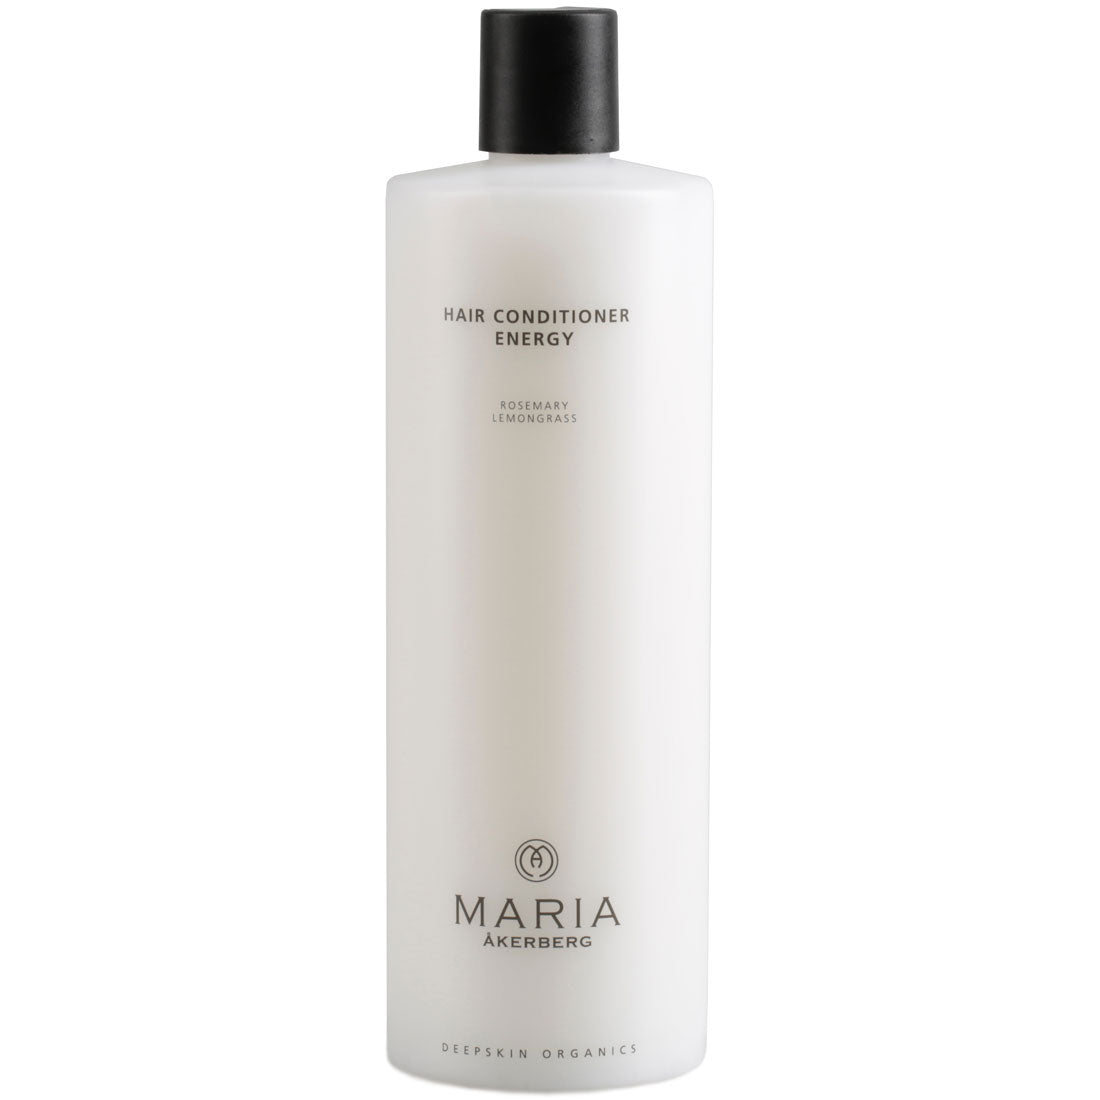 瑞典瑪利亞能量護髮素 Maria Akerberg Hair Conditioner Energy (500ml)